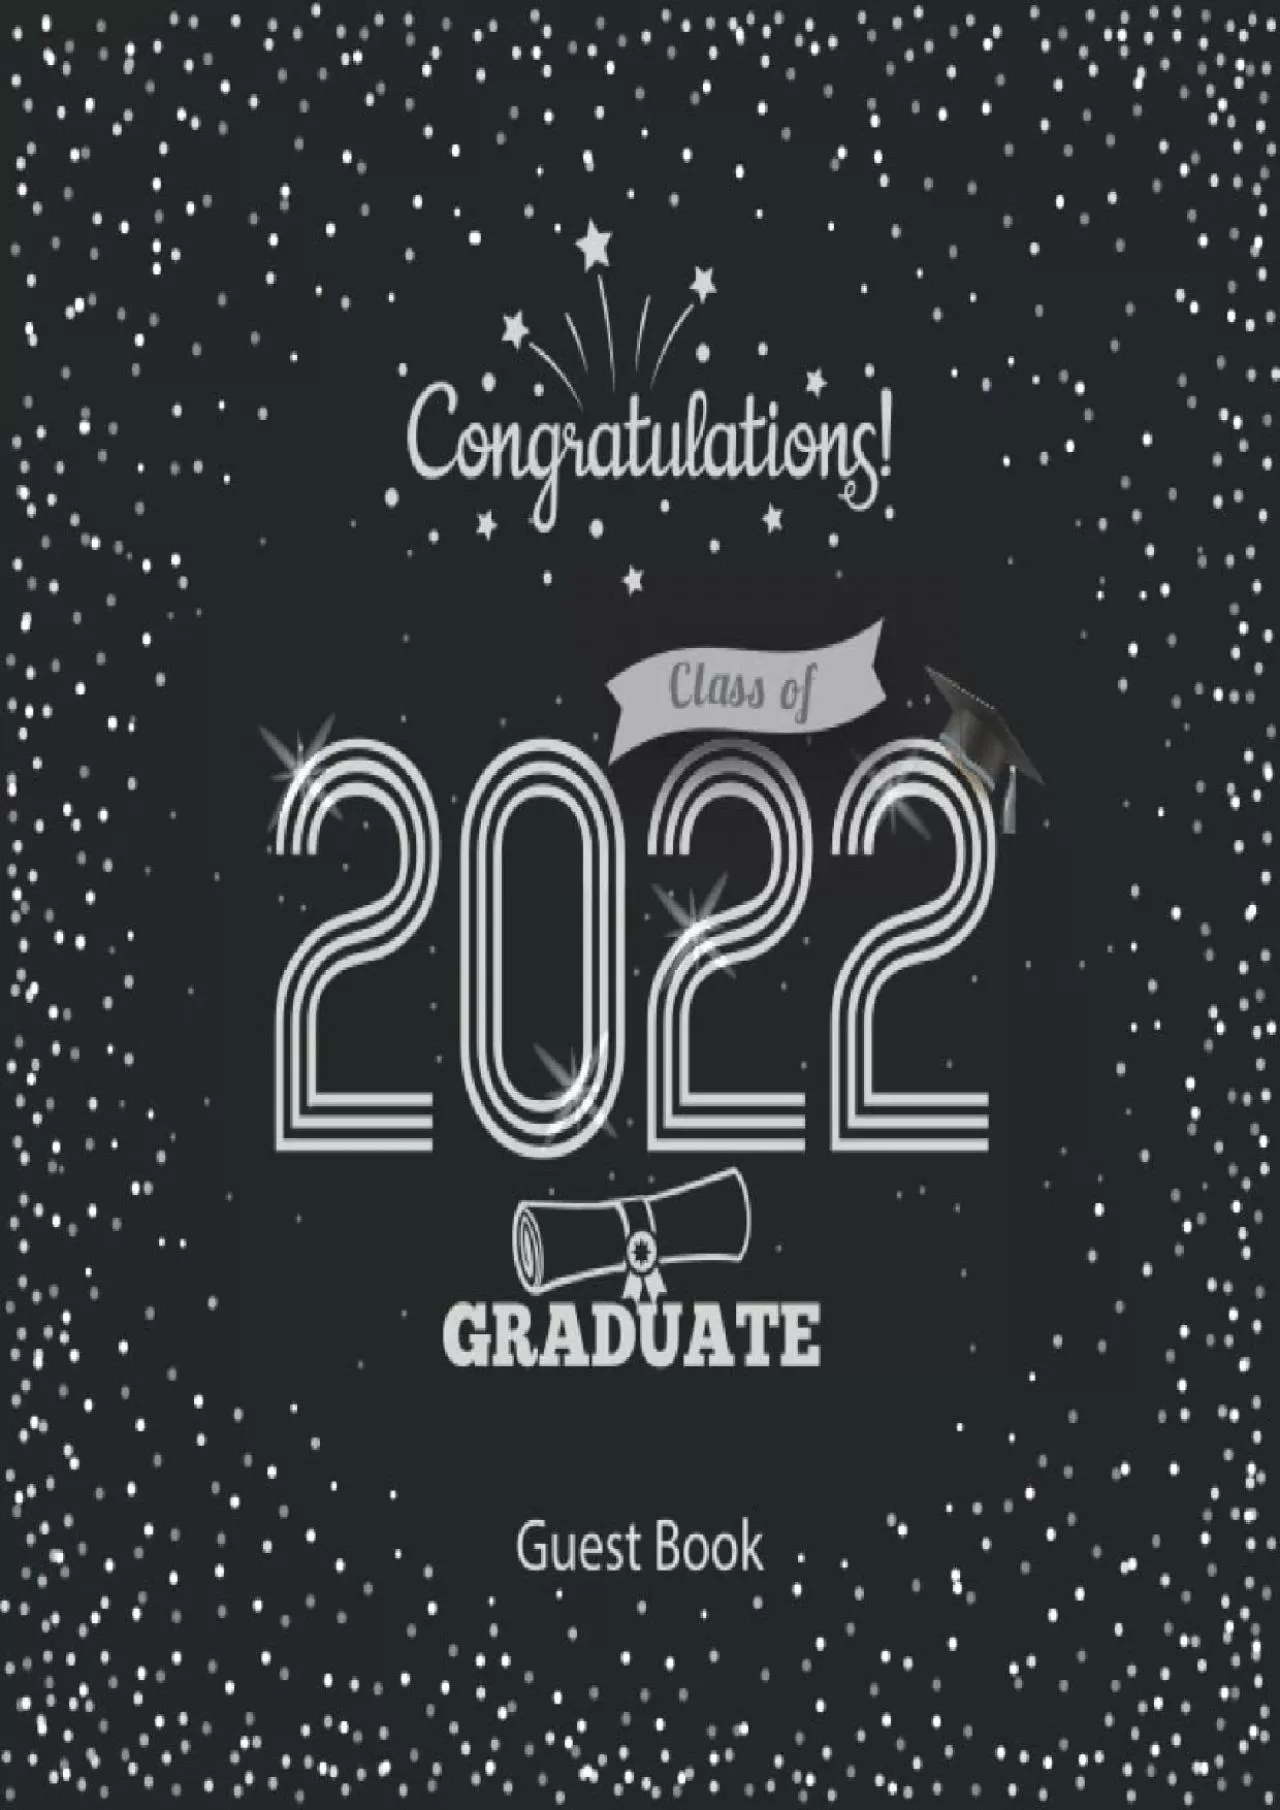 [READ]-Graduation Guest Book: Congratulations Graduate Class Guest Book - Graduation Sign